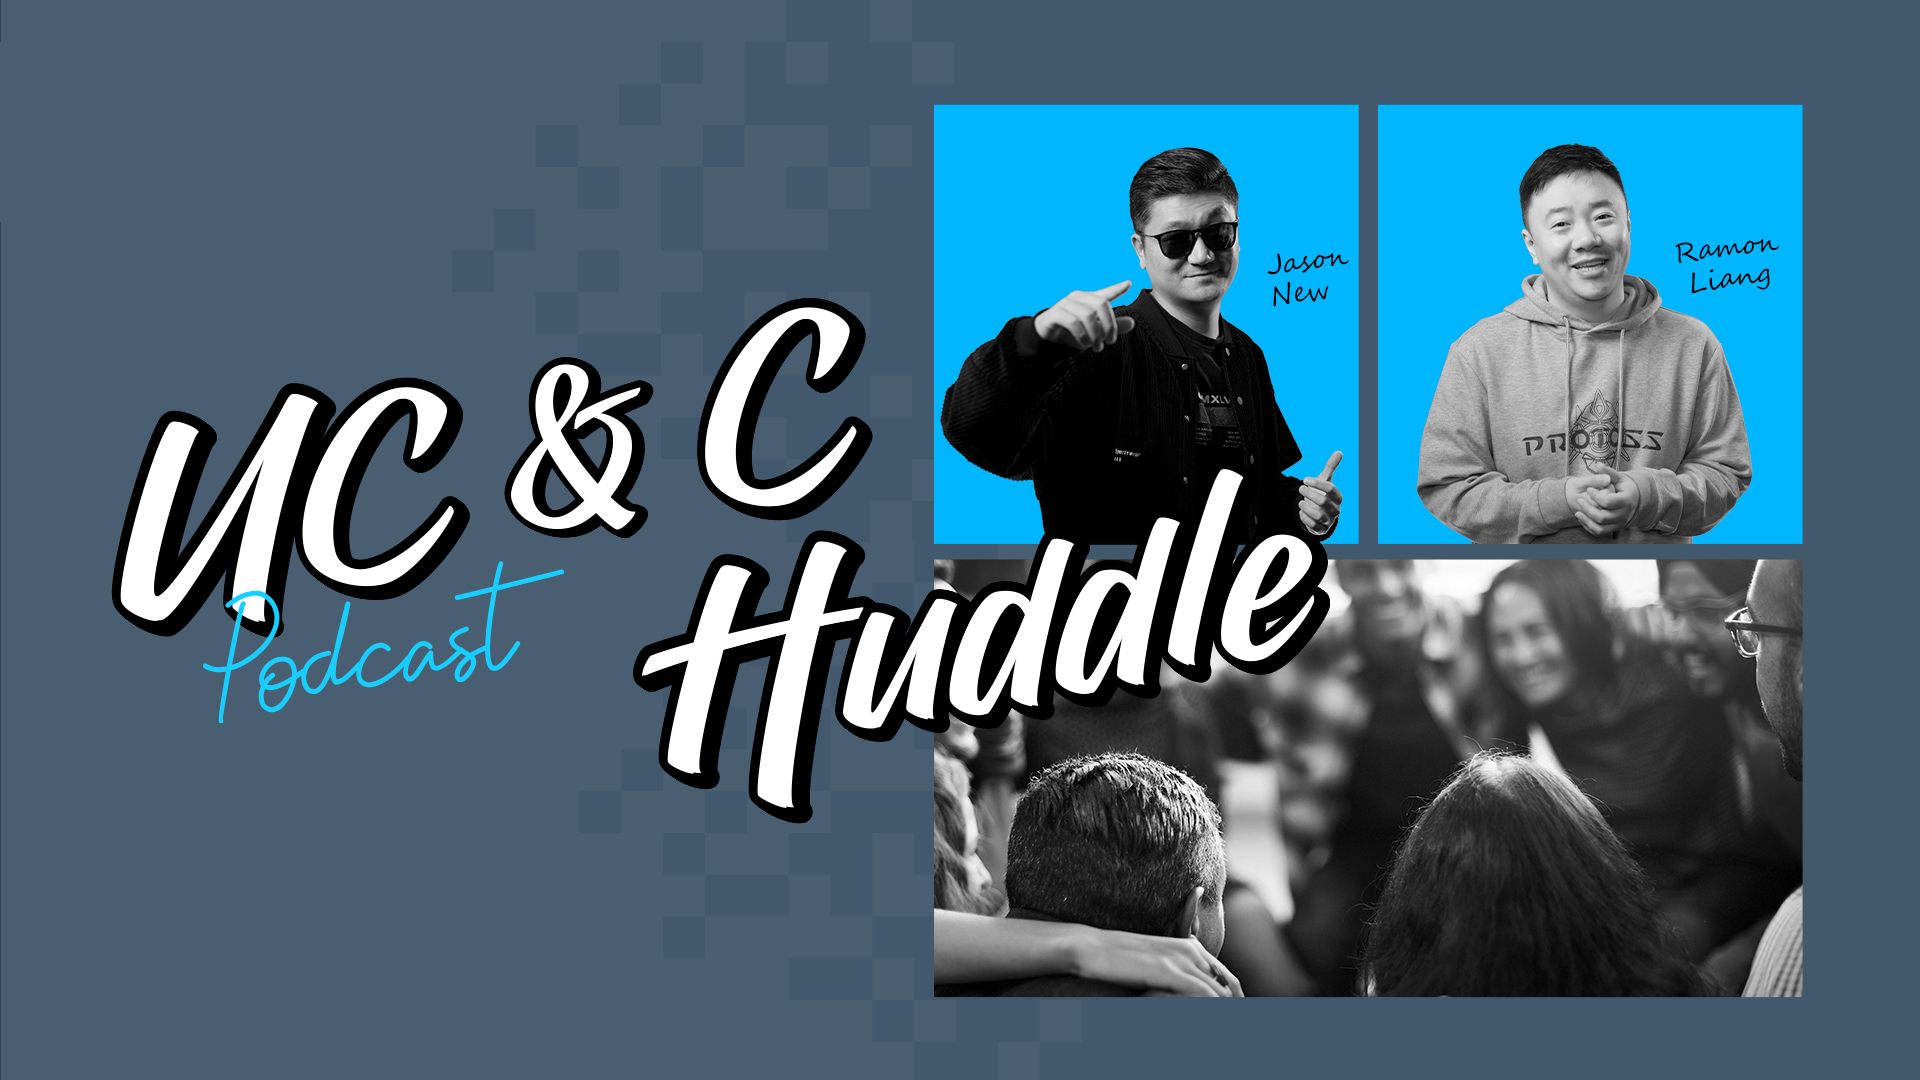 Yeastar Podcast UC&C Huddle